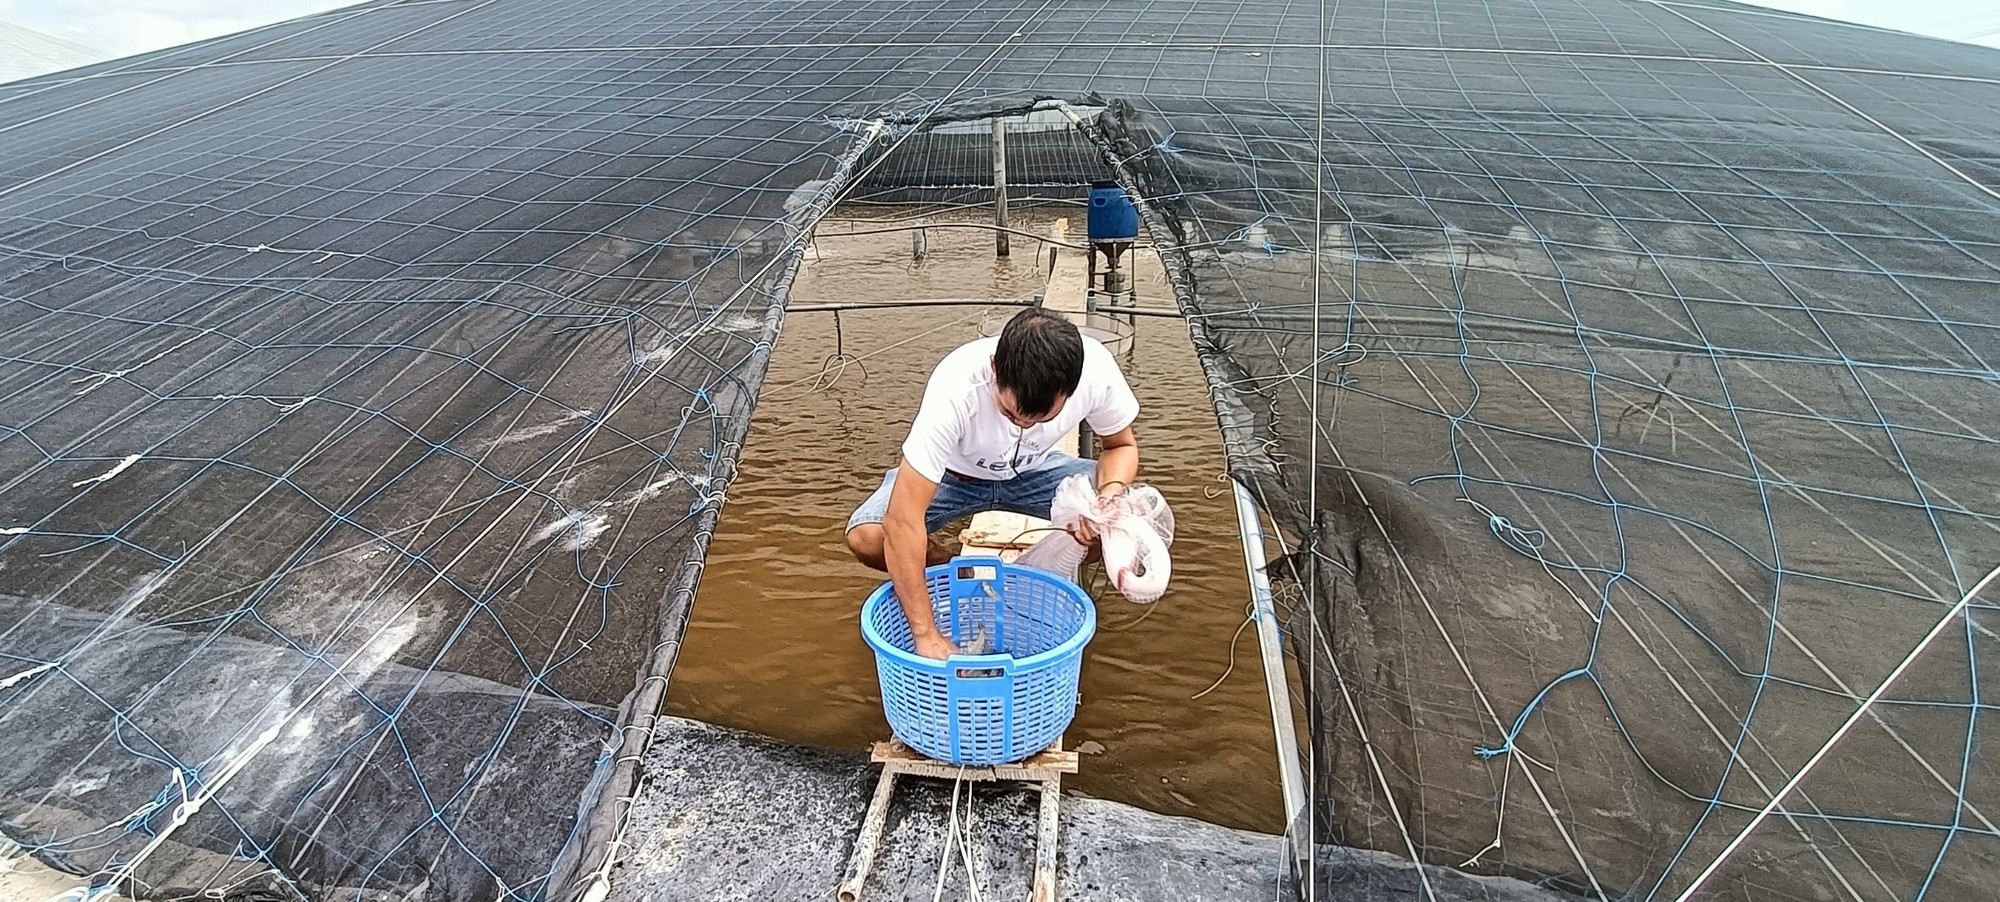 Nông dân nuôi tôm ở Bà Rịa-Vũng Tàu đang lo lắng về một hiện tượng thời tiết này- Ảnh 2.